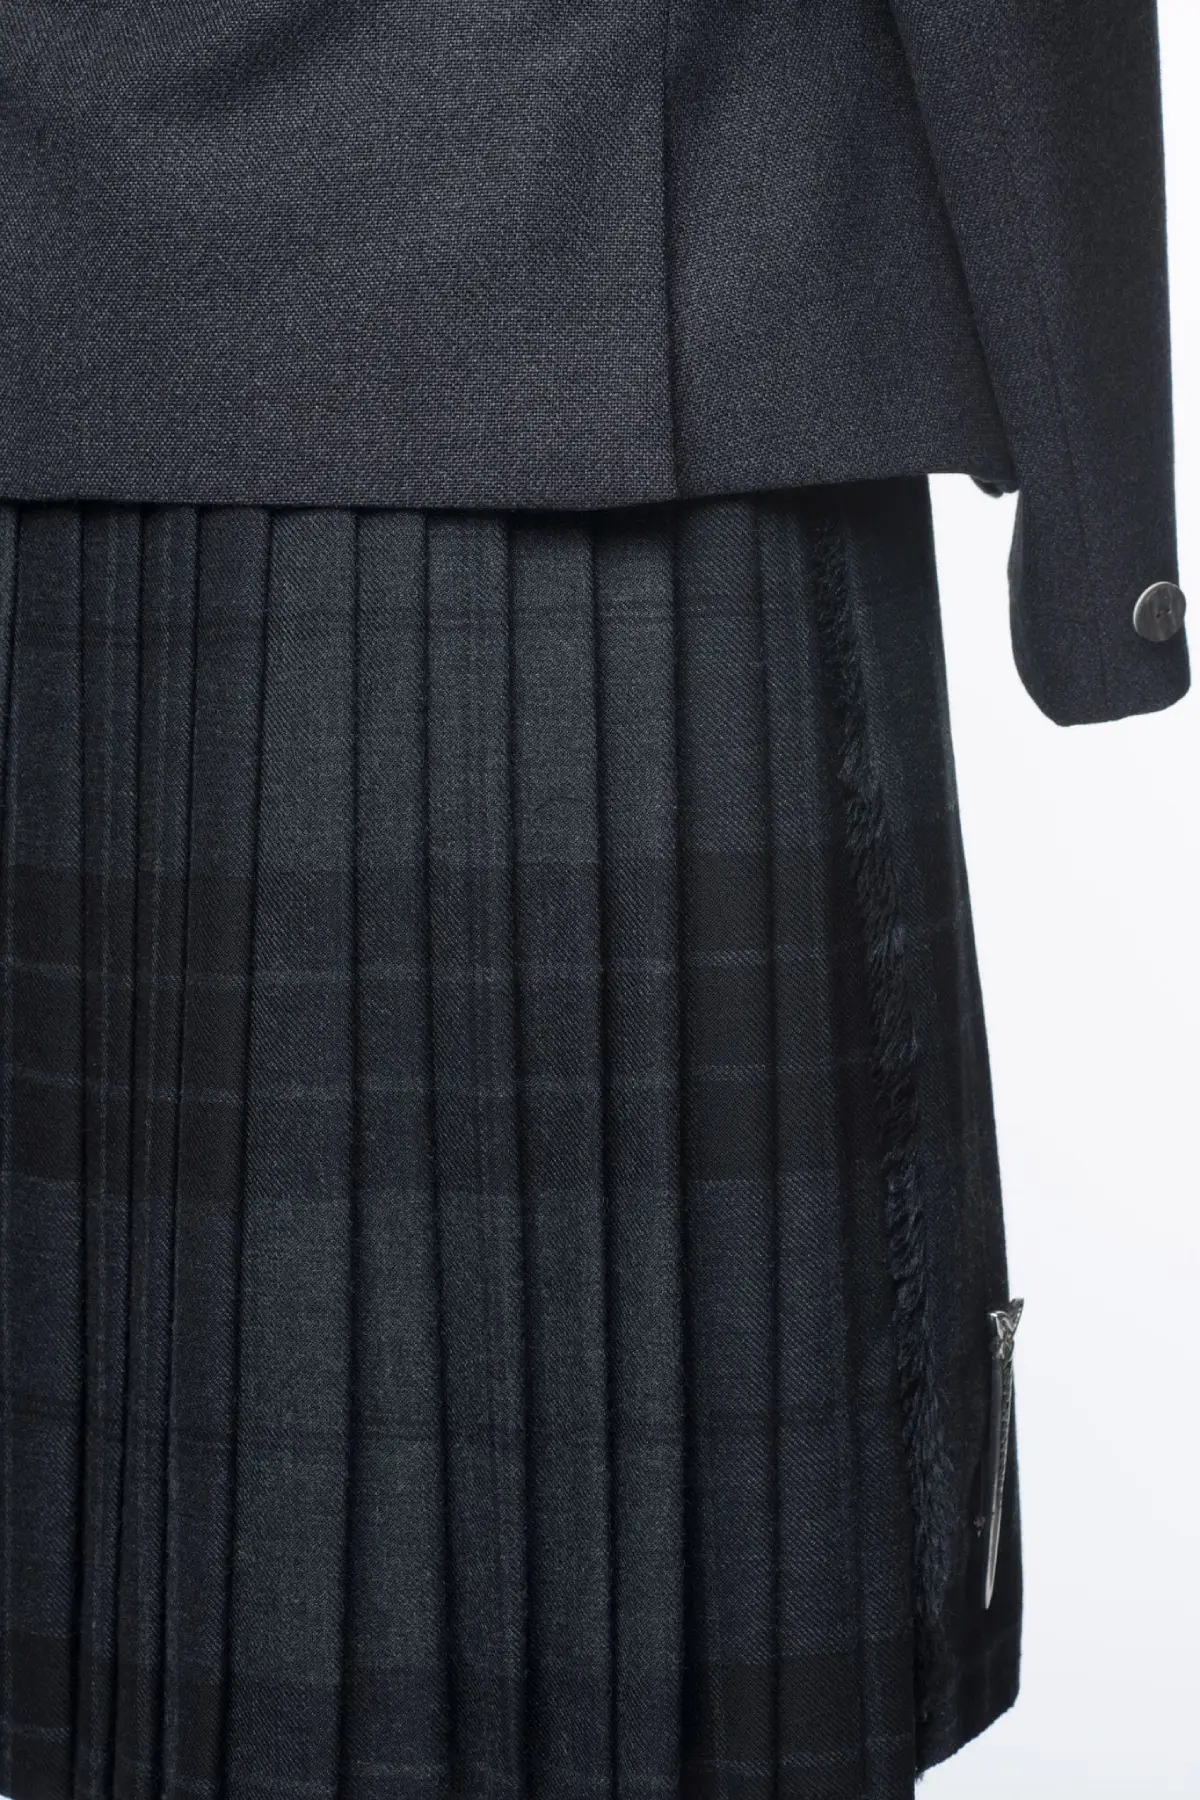 Tweed-Kilt-Outfit6